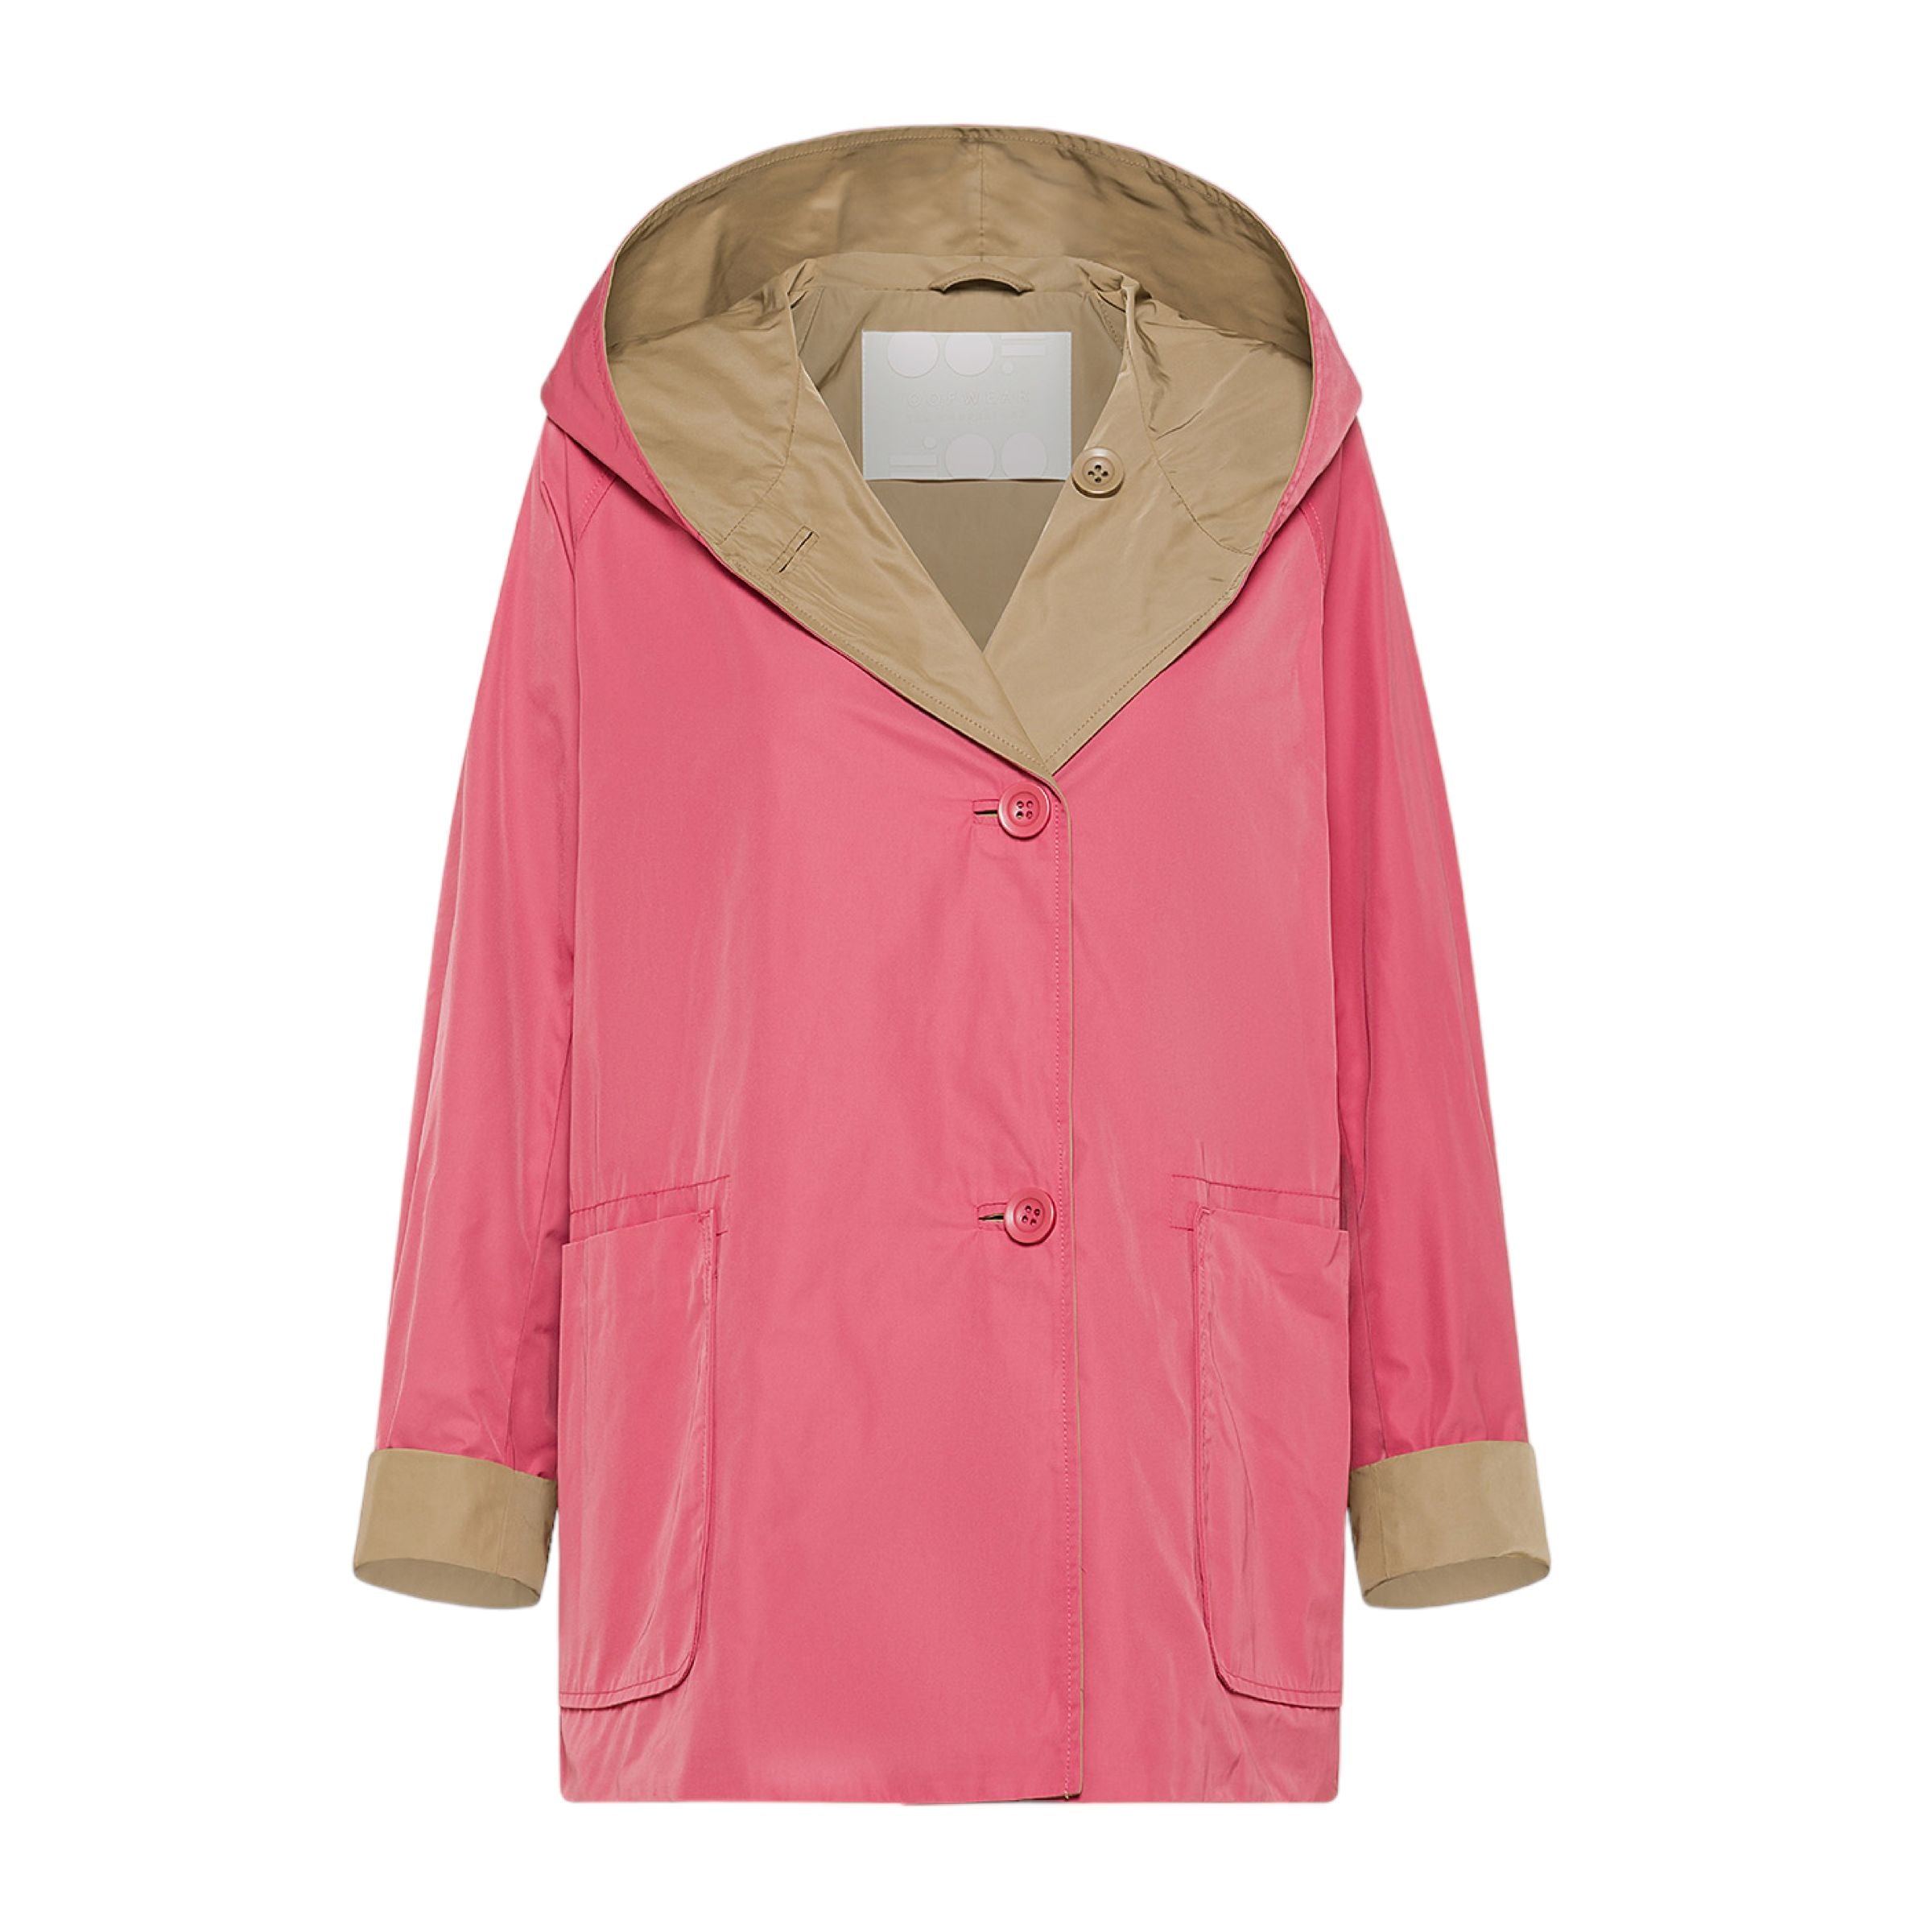 Women's Reversible Jacket Antique Pink/Beige 